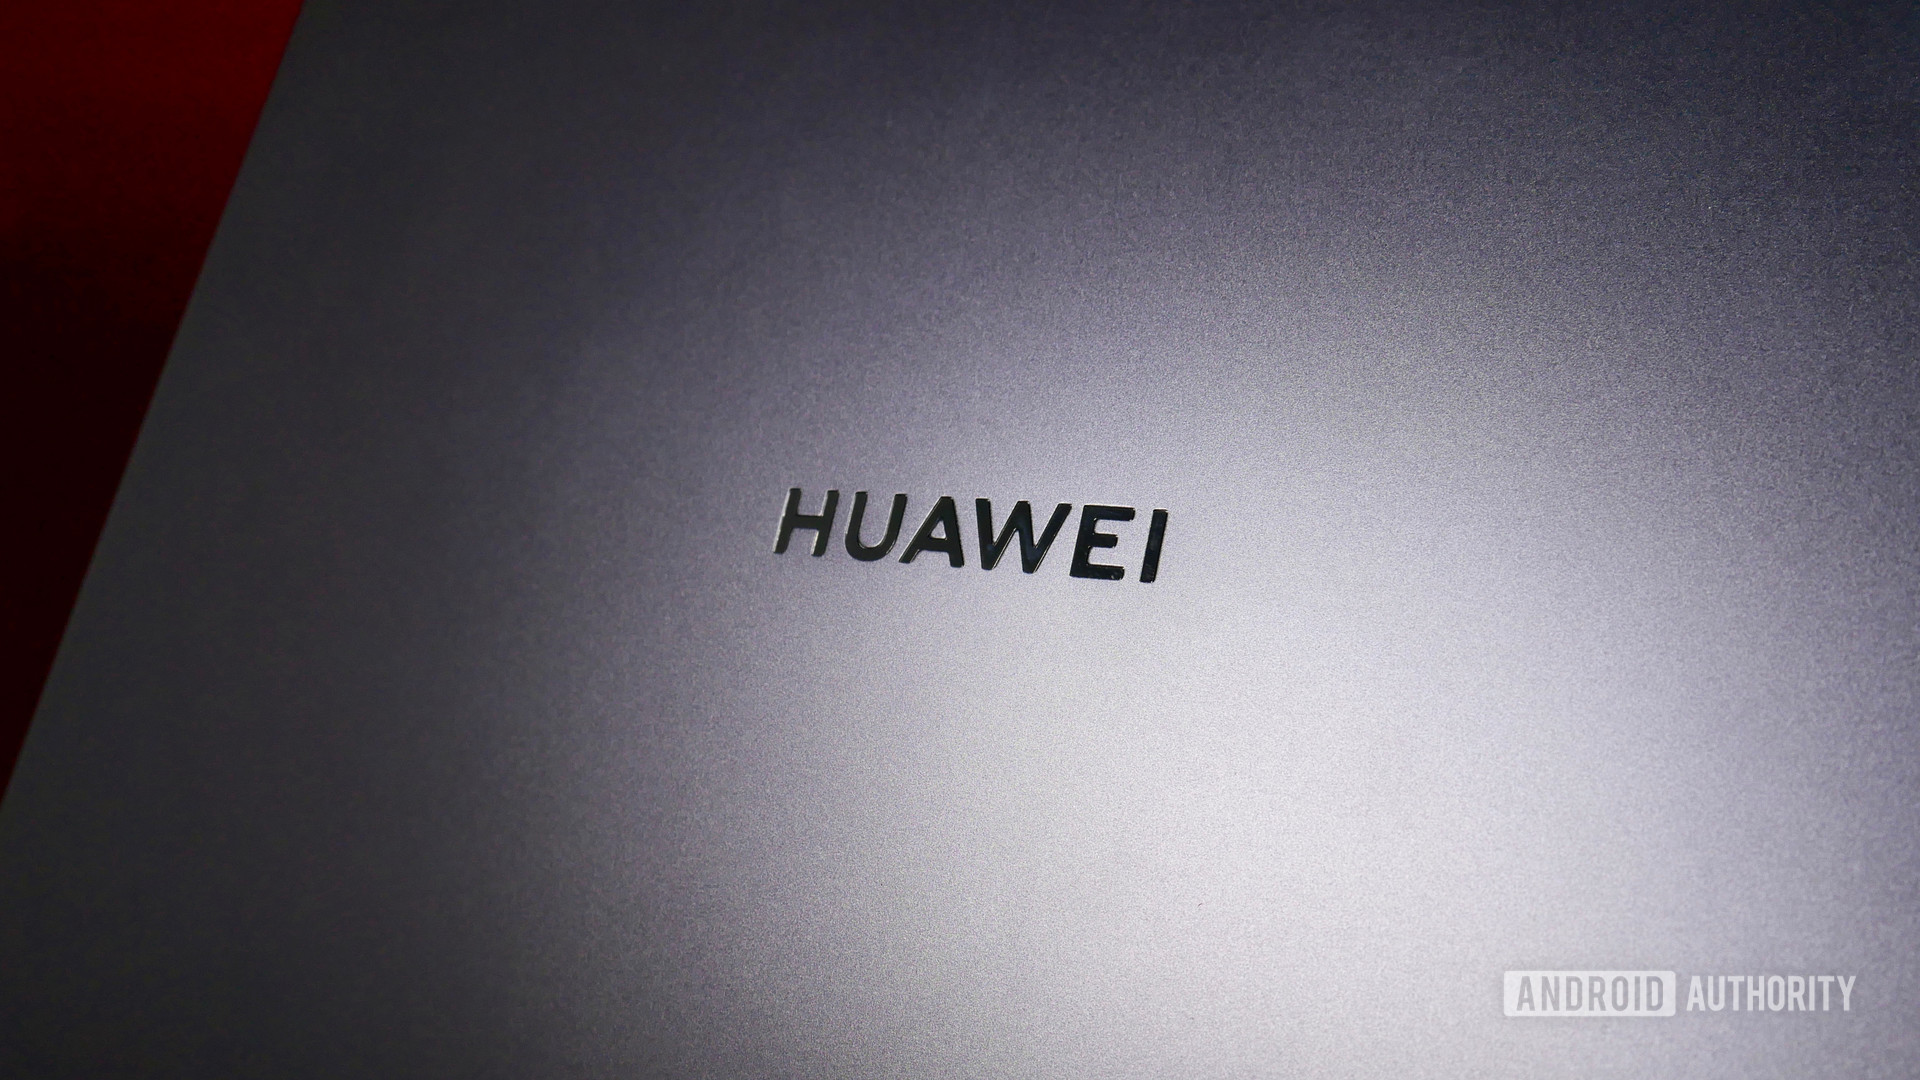 huawei logo on laptop